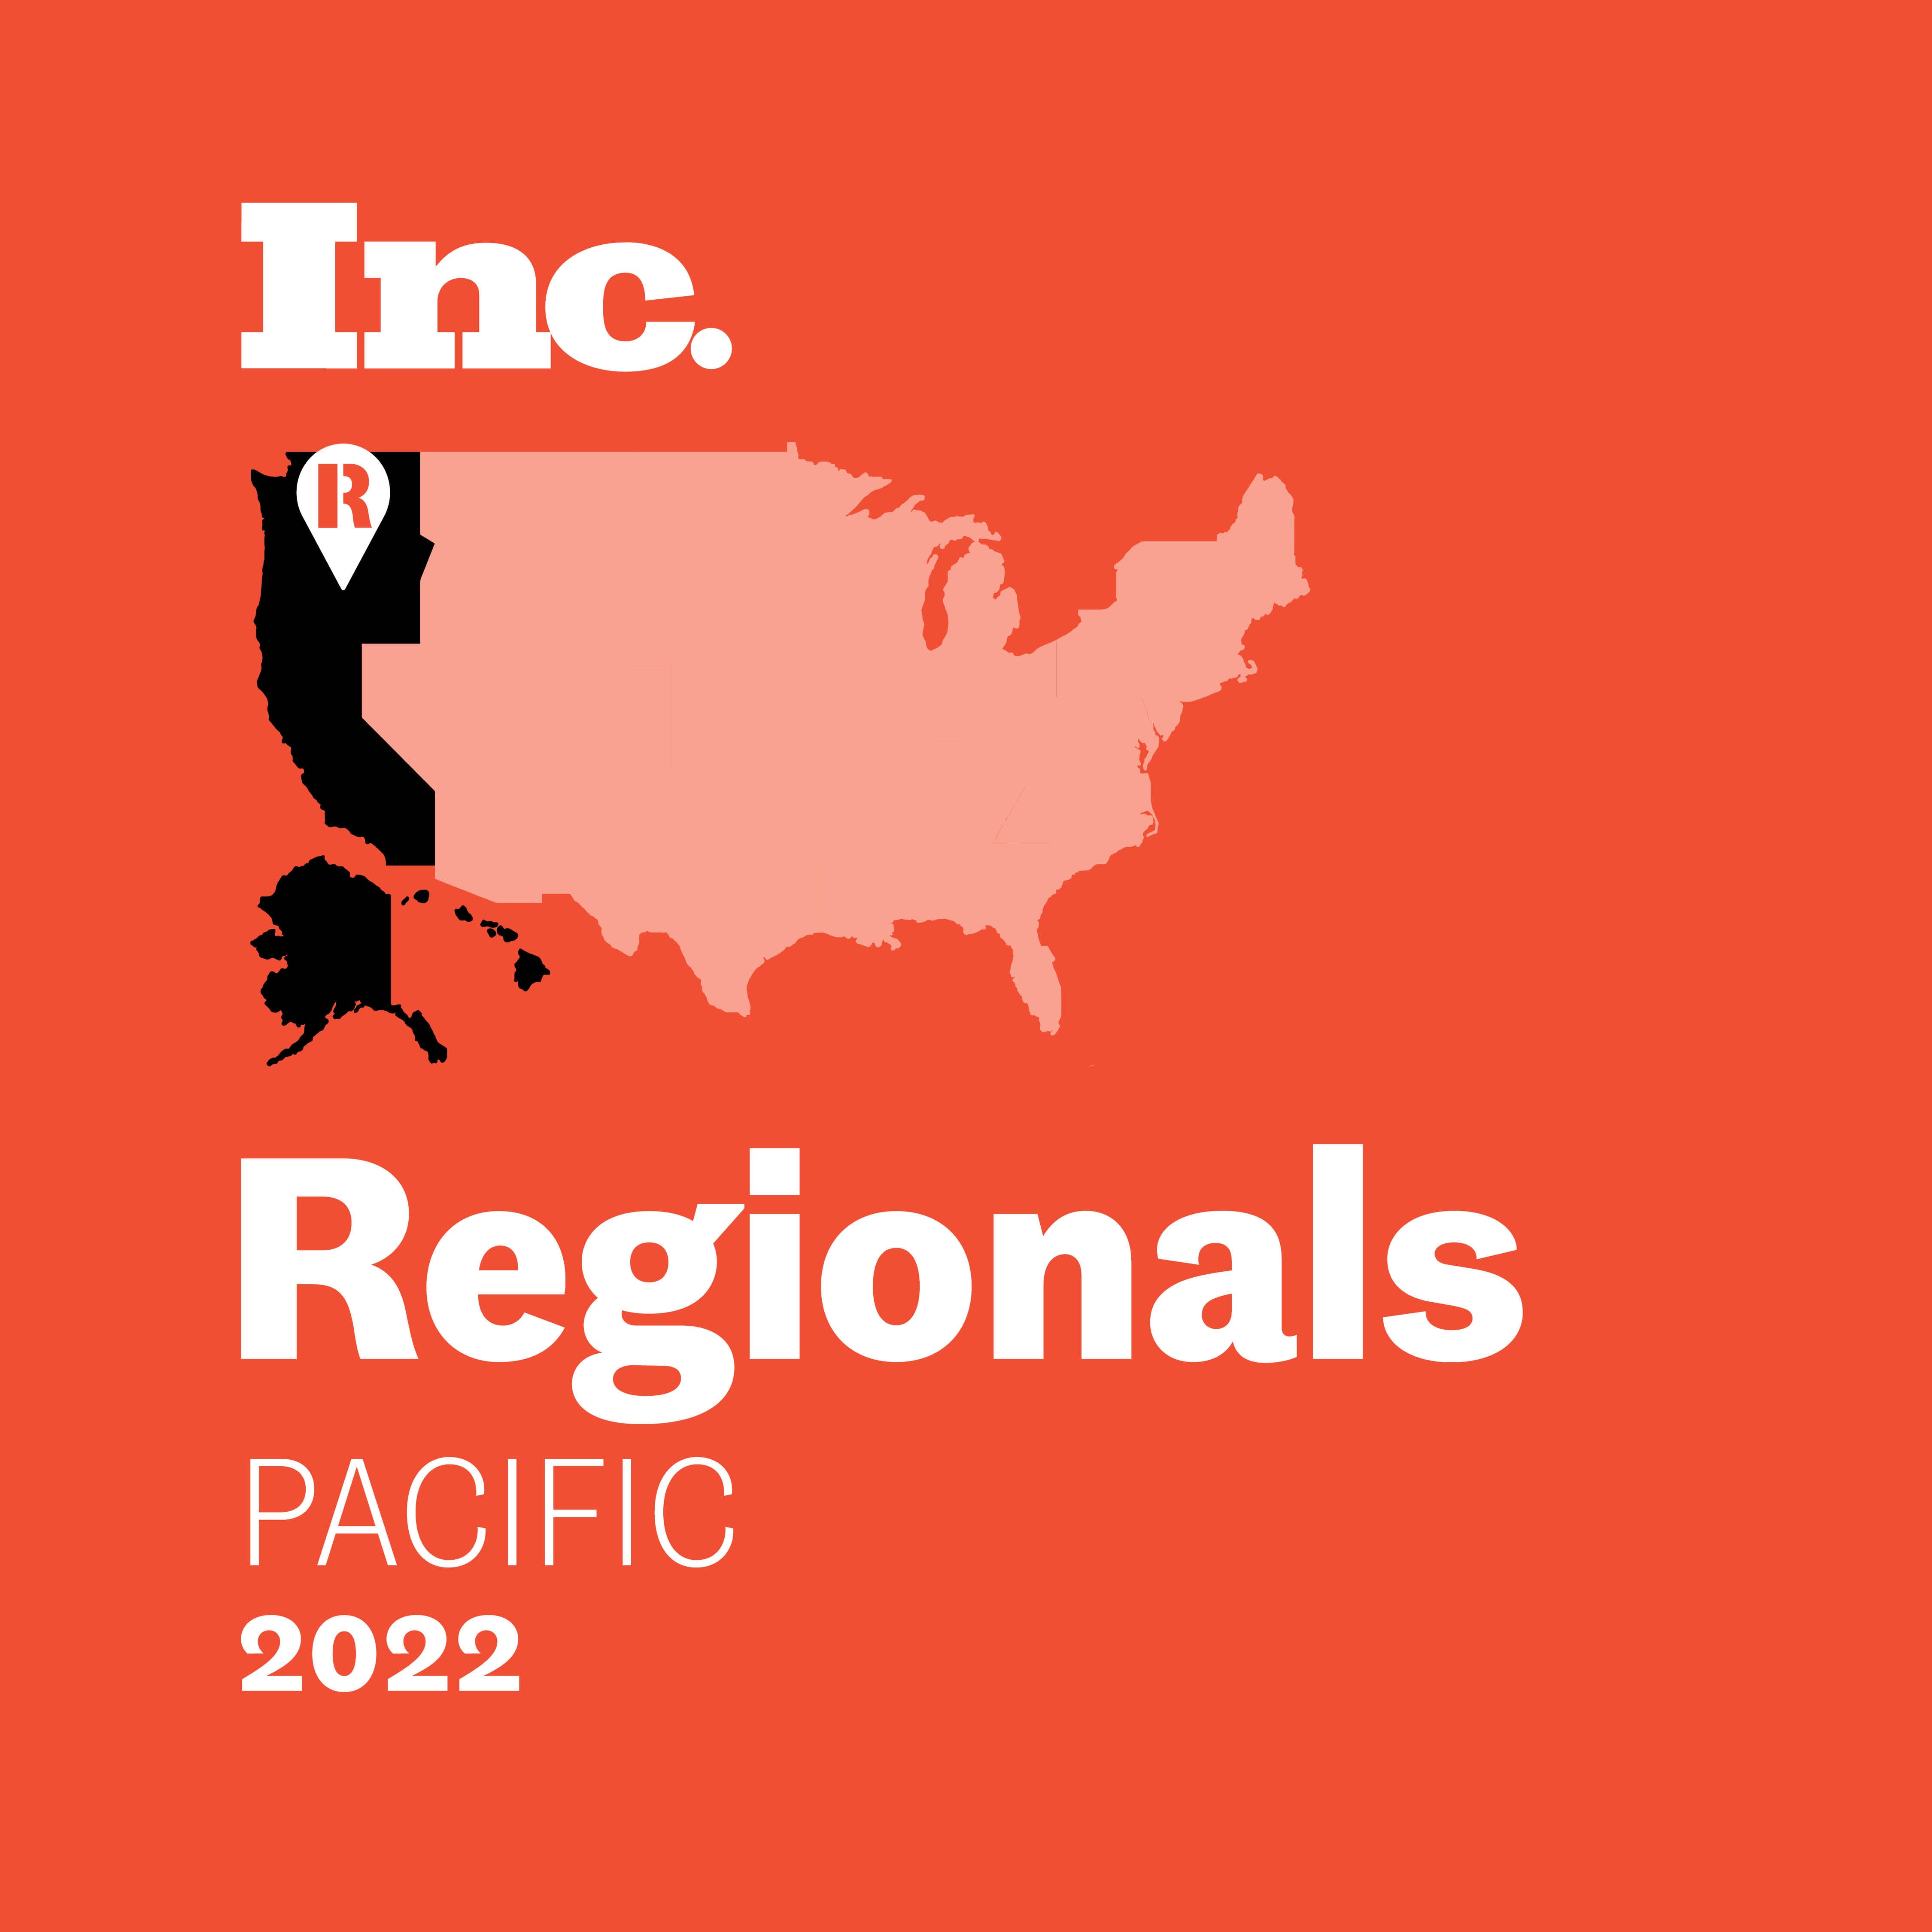 regionals pacific 2022